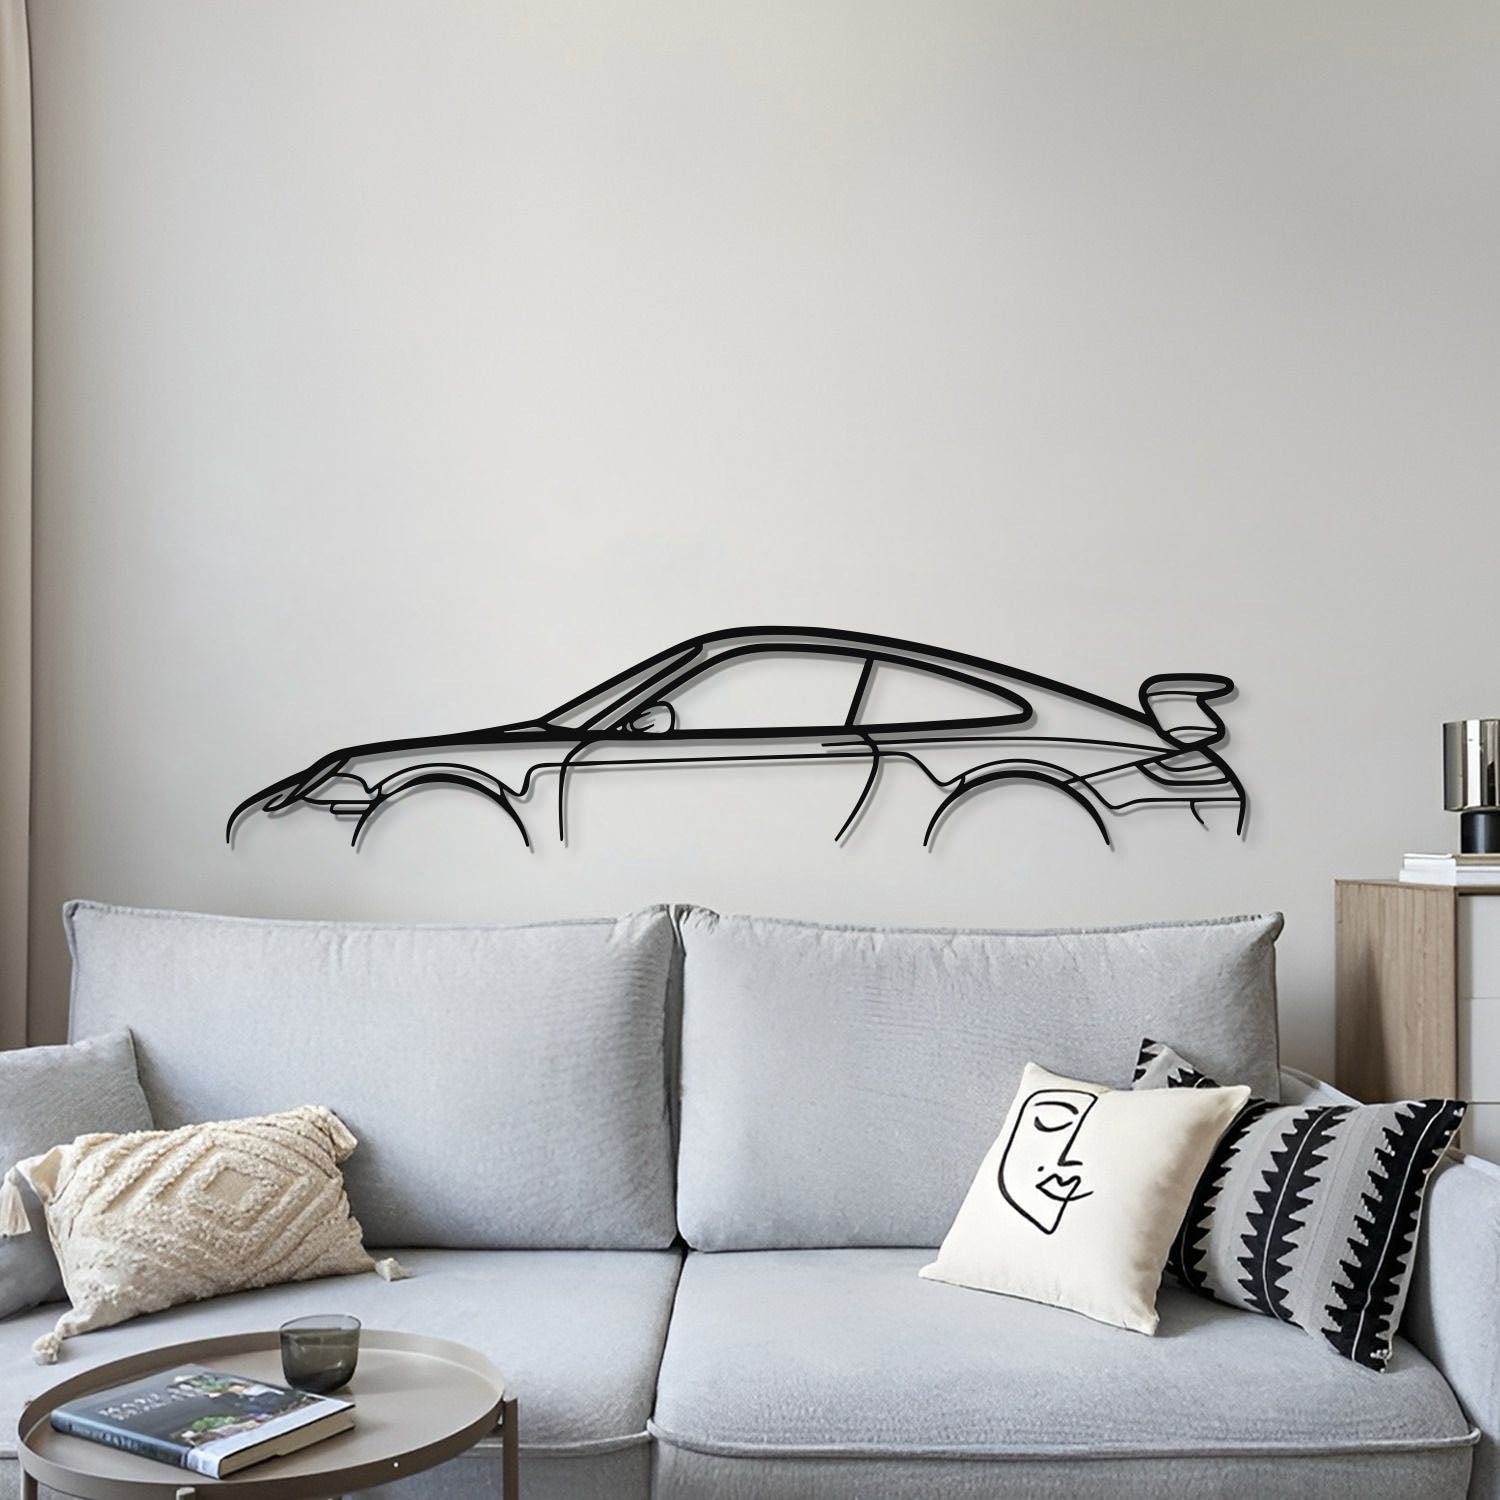 911 GT3 Model 997 Metal Car Wall Art - MT0856